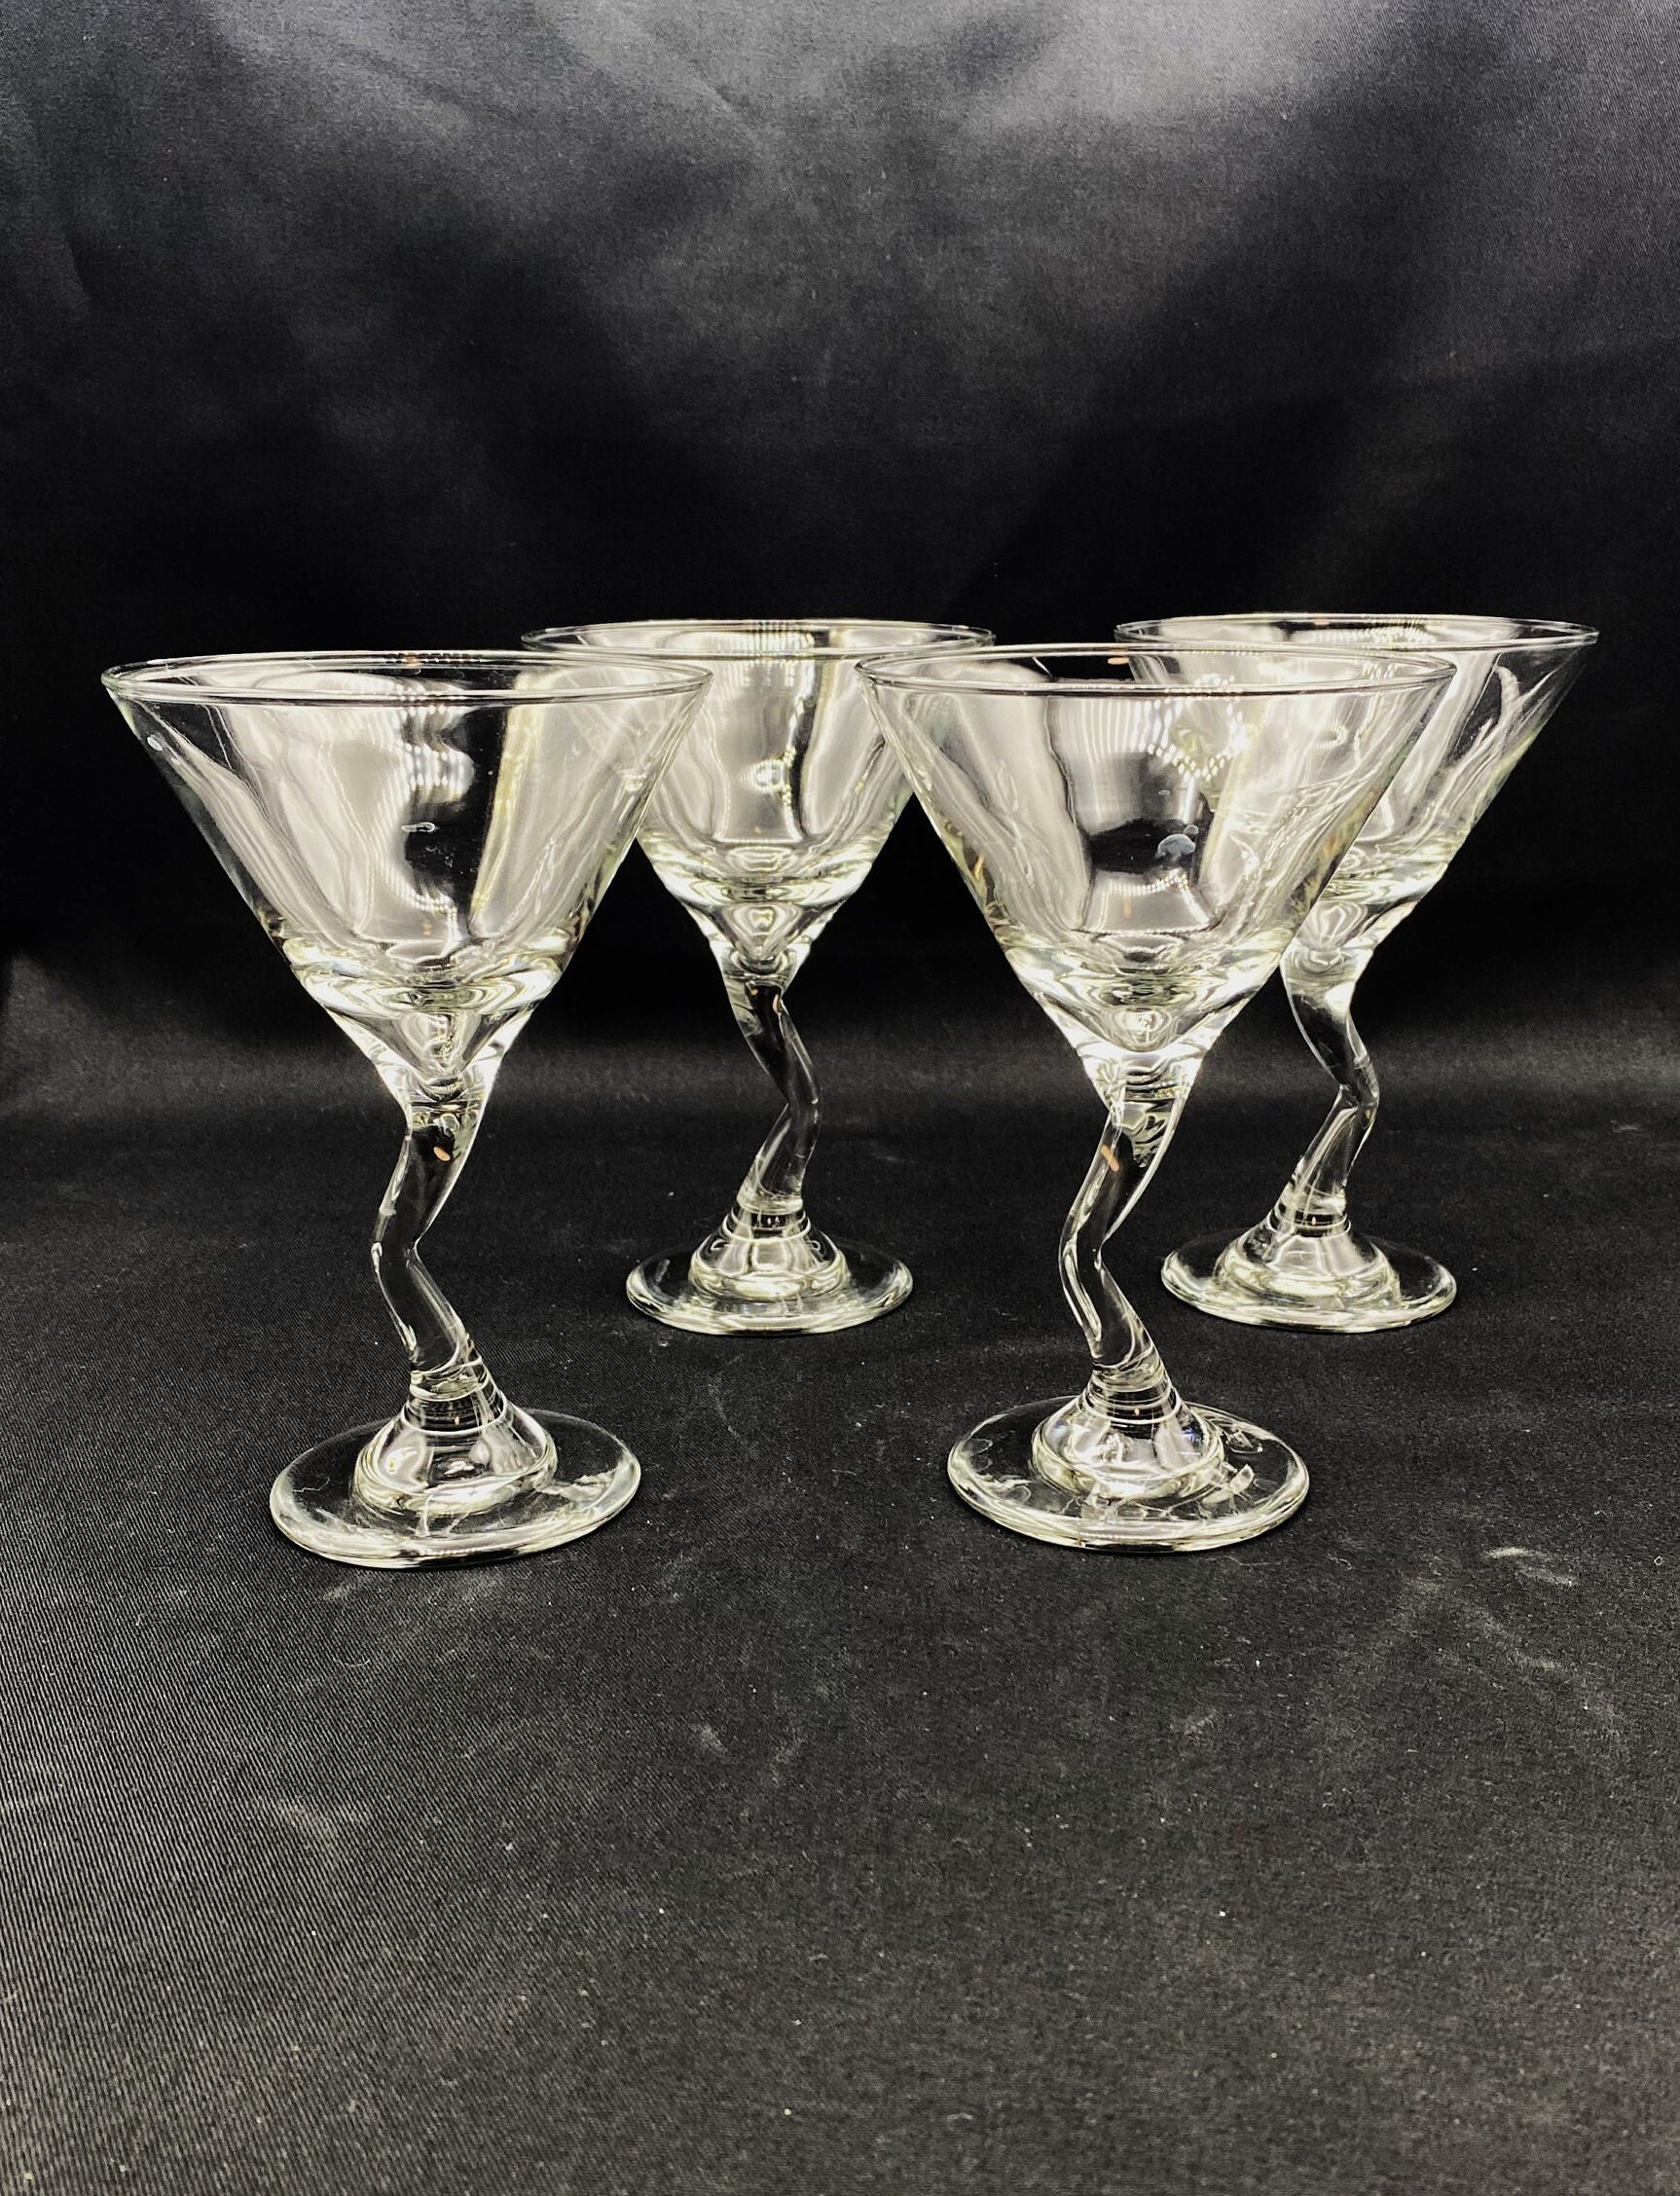 Libbey L37719, 5 Oz Z Stem Martini Glass, 1 DZ